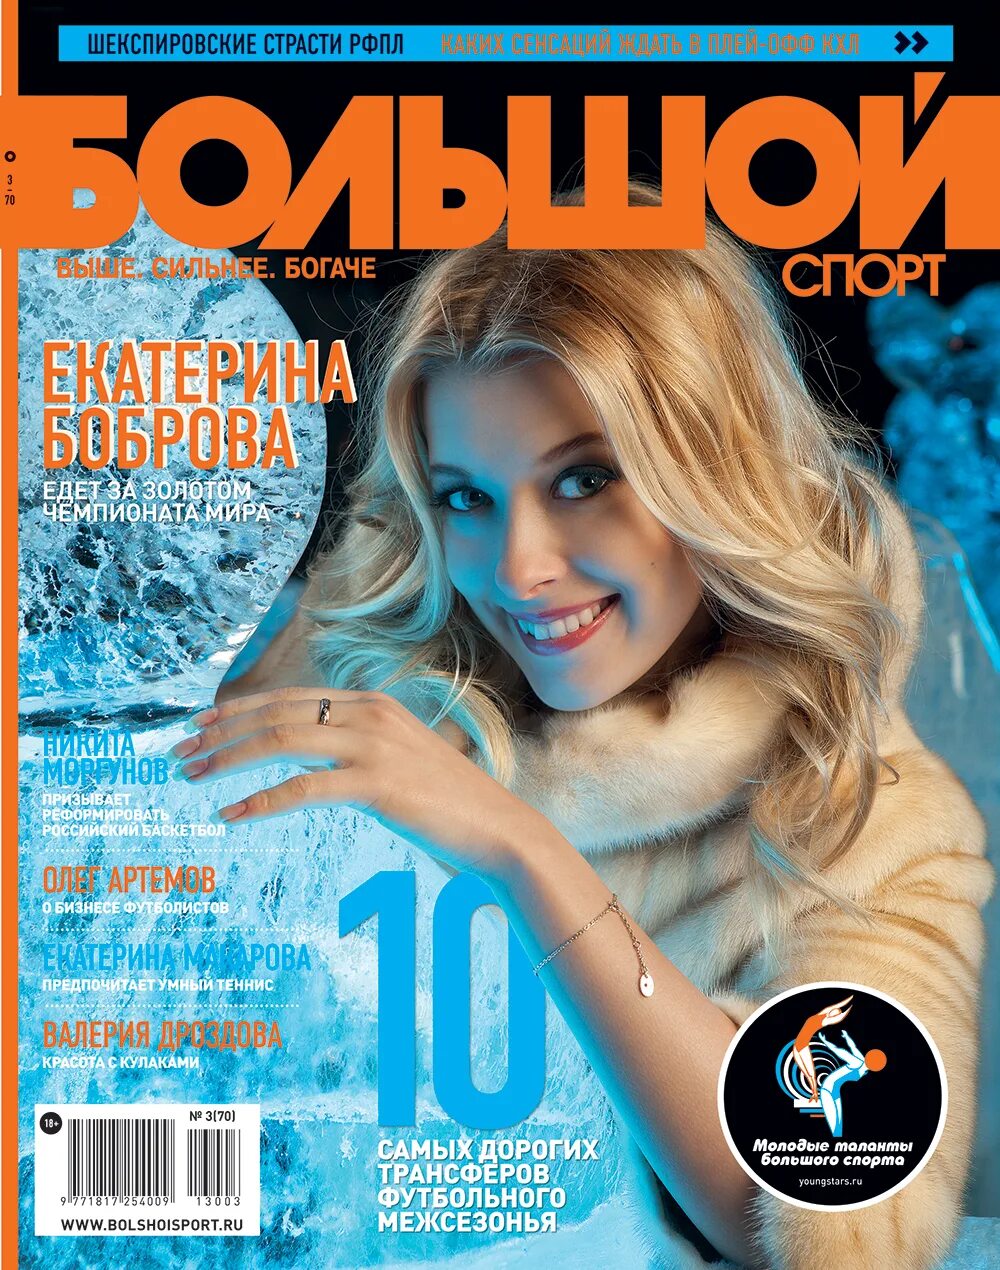 Спортивный журнал. Журналы большие. Огромный журнал. Спортивные журналы россии